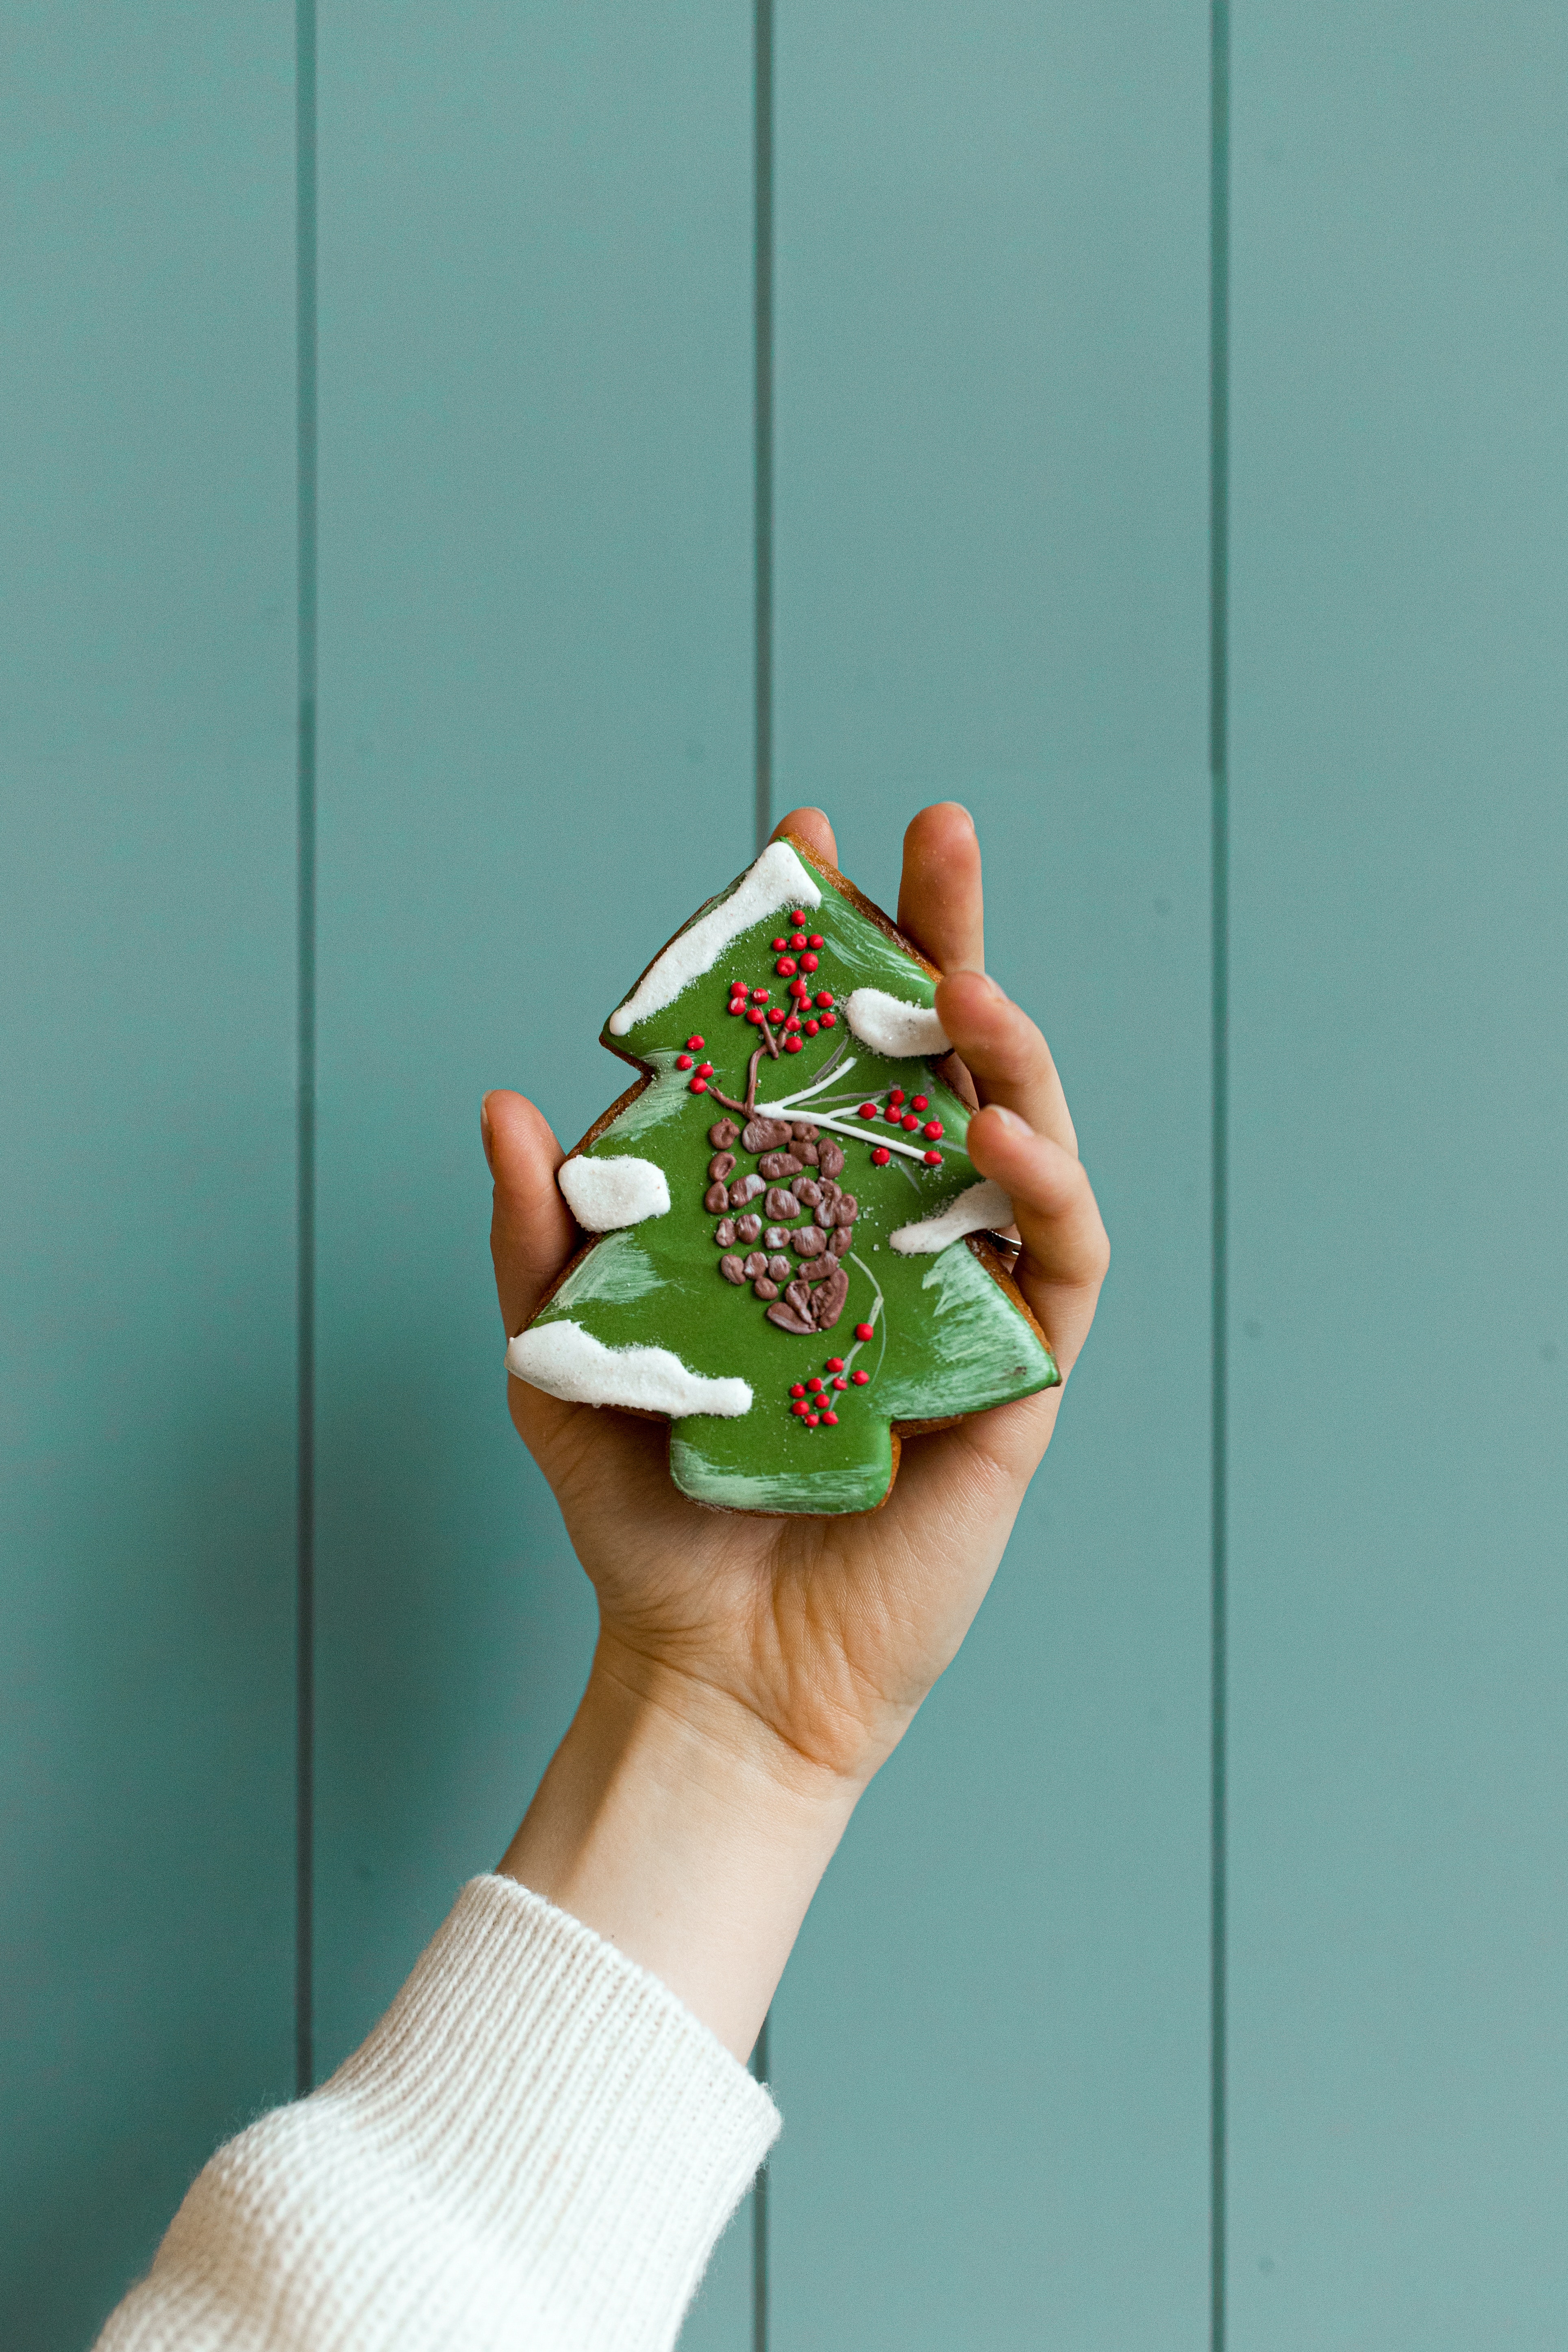 La imagen muestra una galleta con forma de árbol de Navidad.